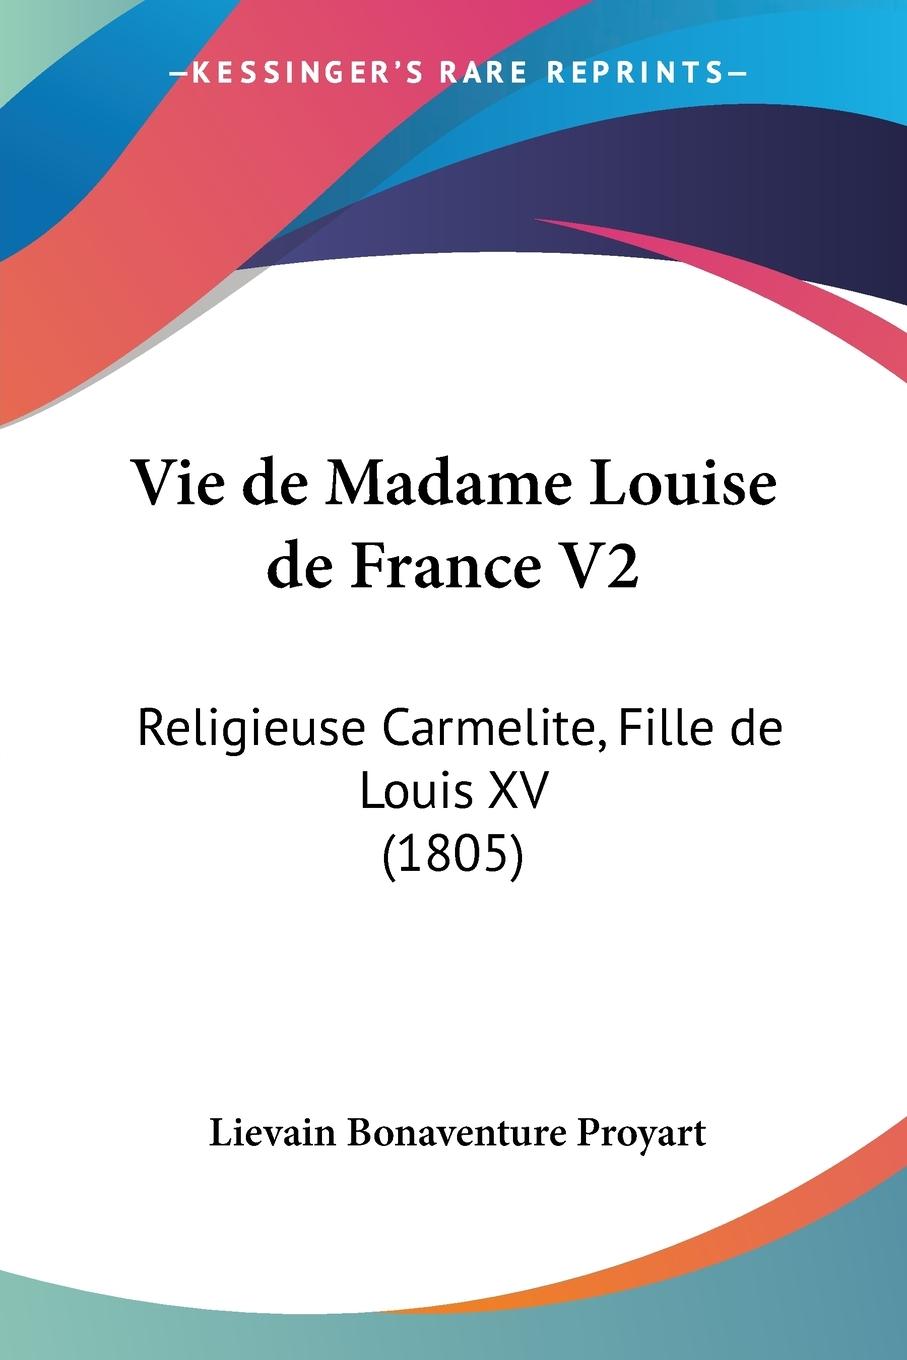 Vie de Madame Louise de France V2 / Religieuse Carmelite, Fille de Louis XV (1805) / Lievain Bonaventure Proyart / Taschenbuch / Paperback / Französisch / 2010 / Kessinger Publishing, LLC - Proyart, Lievain Bonaventure